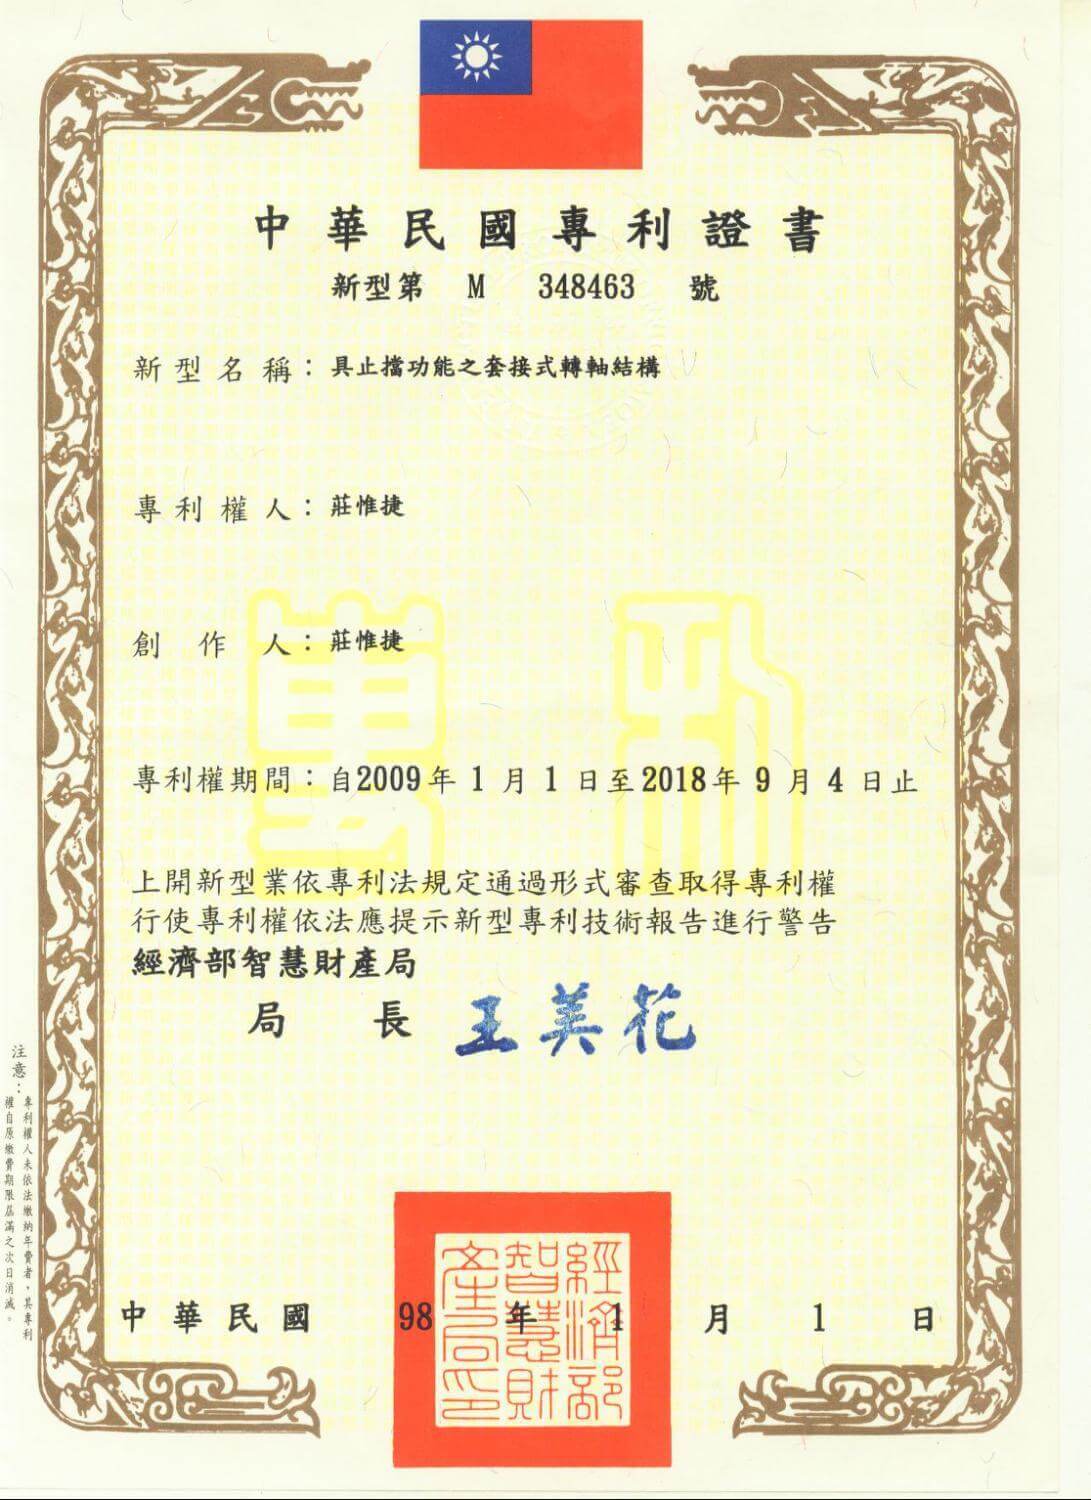 Chienfu-Tec CNC patents in Taiwan-19